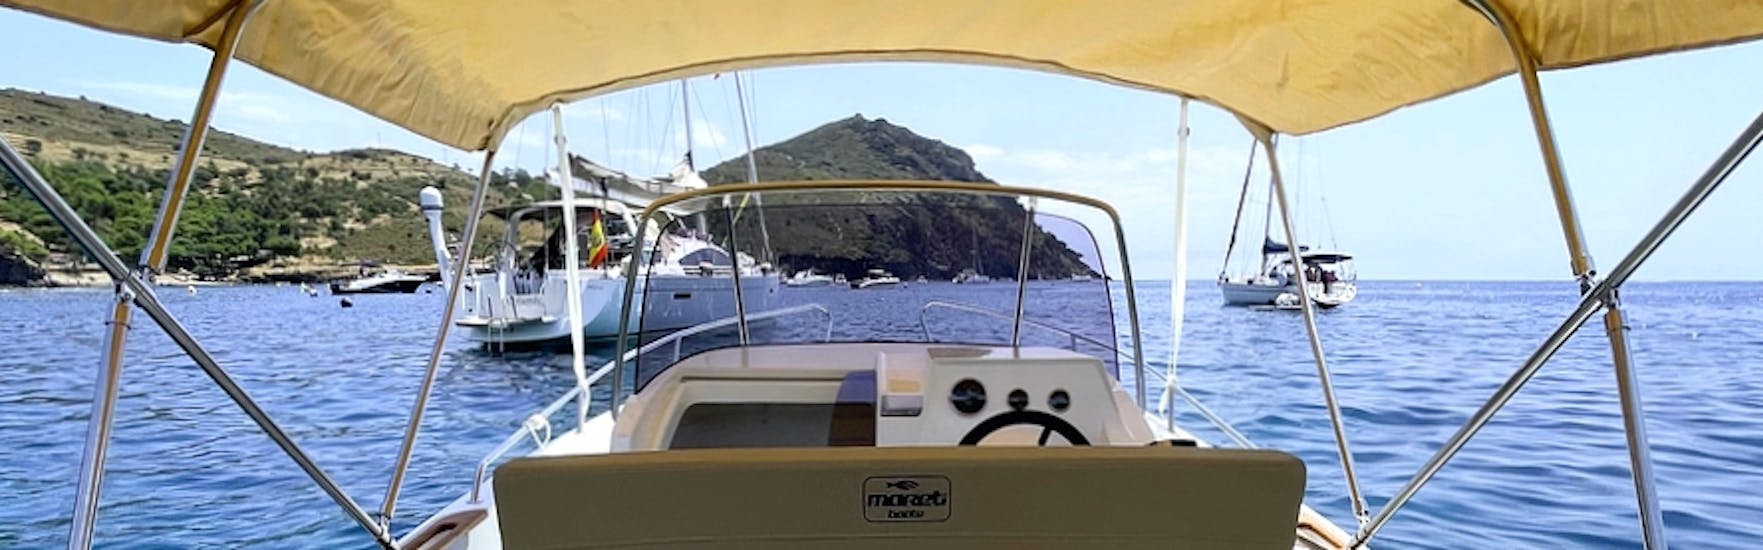 De moderne MARETI 600 OPEN boot cruisen op de blauwe wateren van de rozenbaai tijdens een bootverhuur in Costa Brava voor maximaal 7 personen met vaarbewijs bij Maxi Boats.